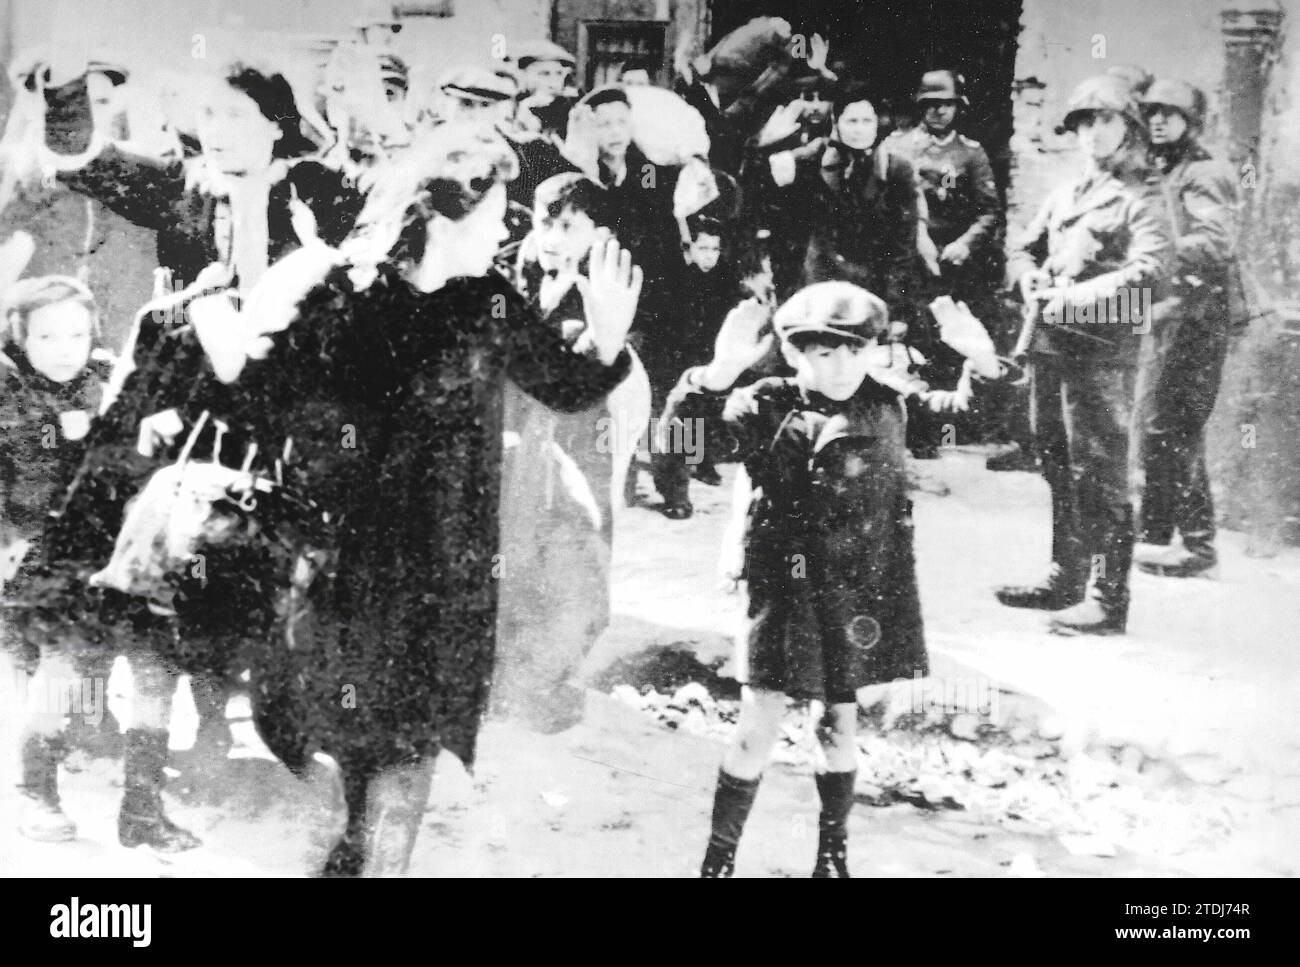 Deutsche Truppen eskortieren Juden aus dem Warschauer Ghetto, darunter der Junge Arthur Schmiontak. Im Oktober 1940 wurden alle Juden in Warschau gezwungen, sich auf einen Teil der Stadt zu konzentrieren. Am 31. Des gleichen Monats wurde das Ghetto geschlossen. Am 19. April 1943 begann eine direkte Konfrontation mit den deutschen Truppen, die mit der symbolischen Sprengung der großen Synagoge endete. Das Ghetto war in Schutt gerissen worden. Tausende Menschen starben, andere wurden erschossen und Überlebende in Konzentrationslager geschickt. Quelle: Album/Archivo ABC Stockfoto